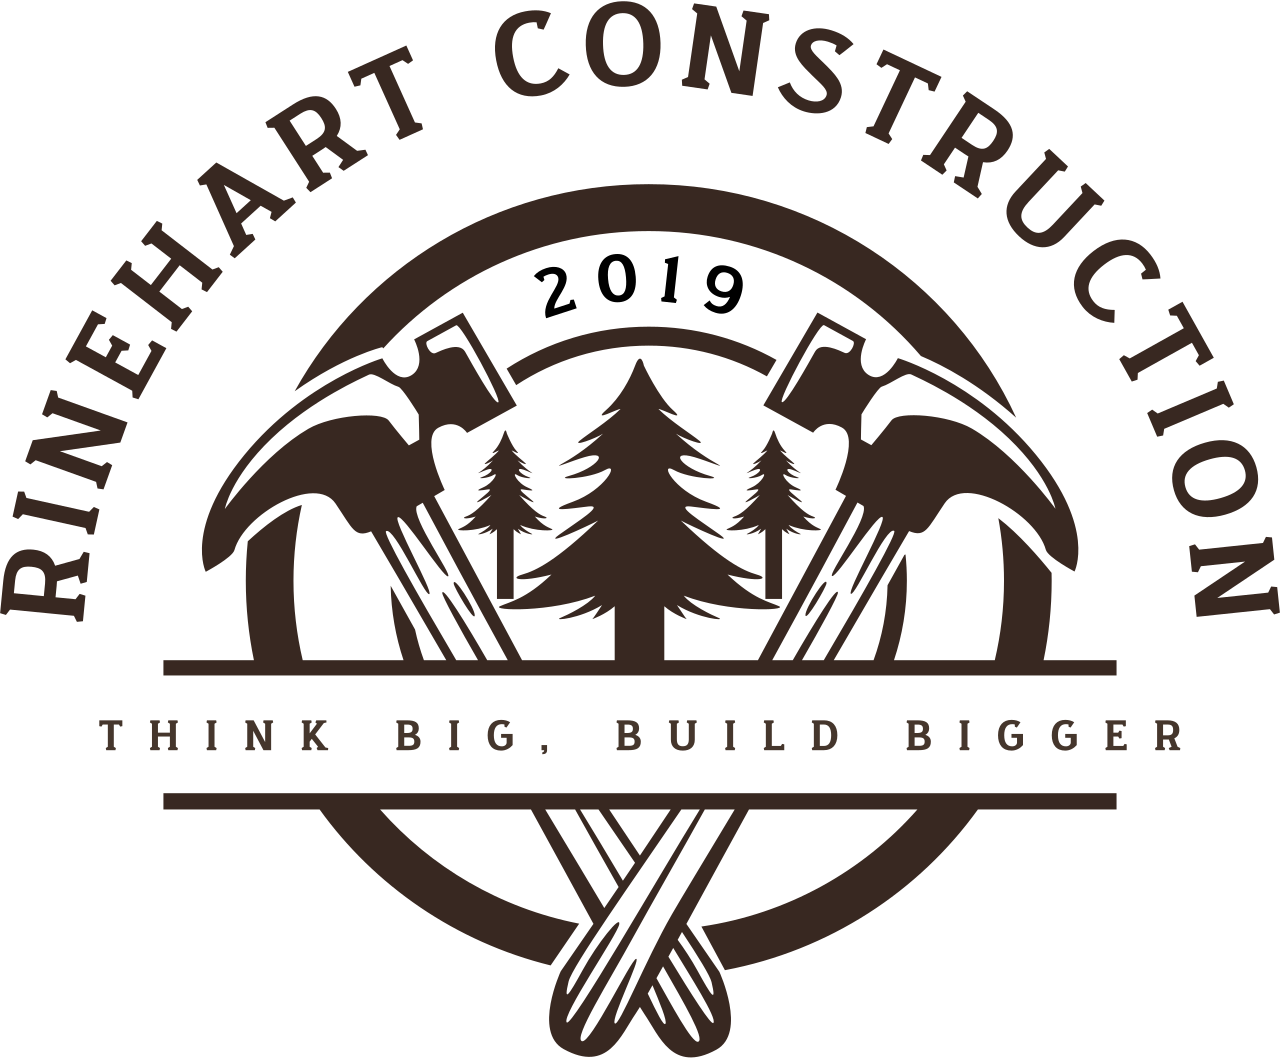 Rinehart Construction's logo